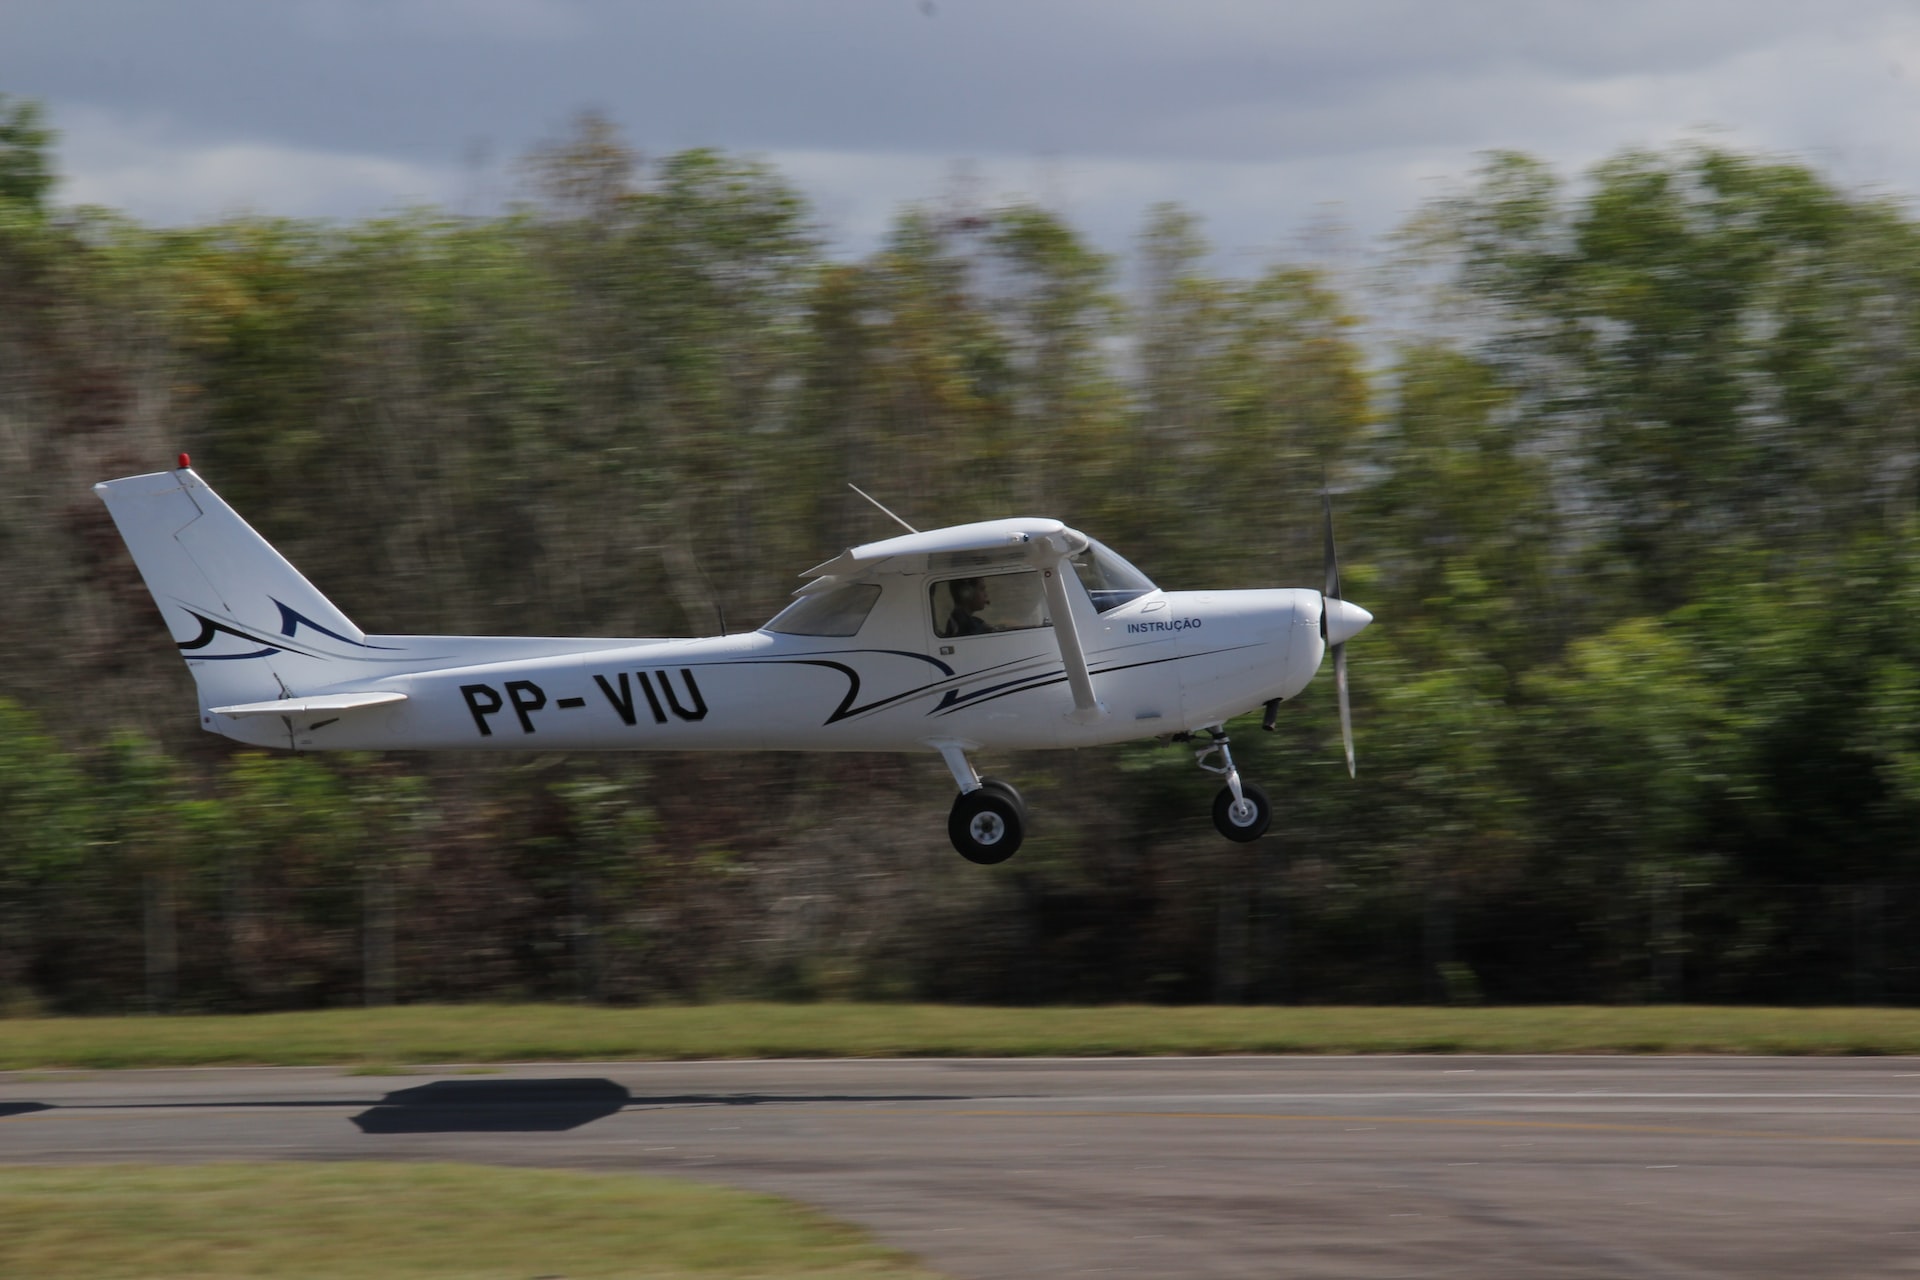 Cessna aircraft company